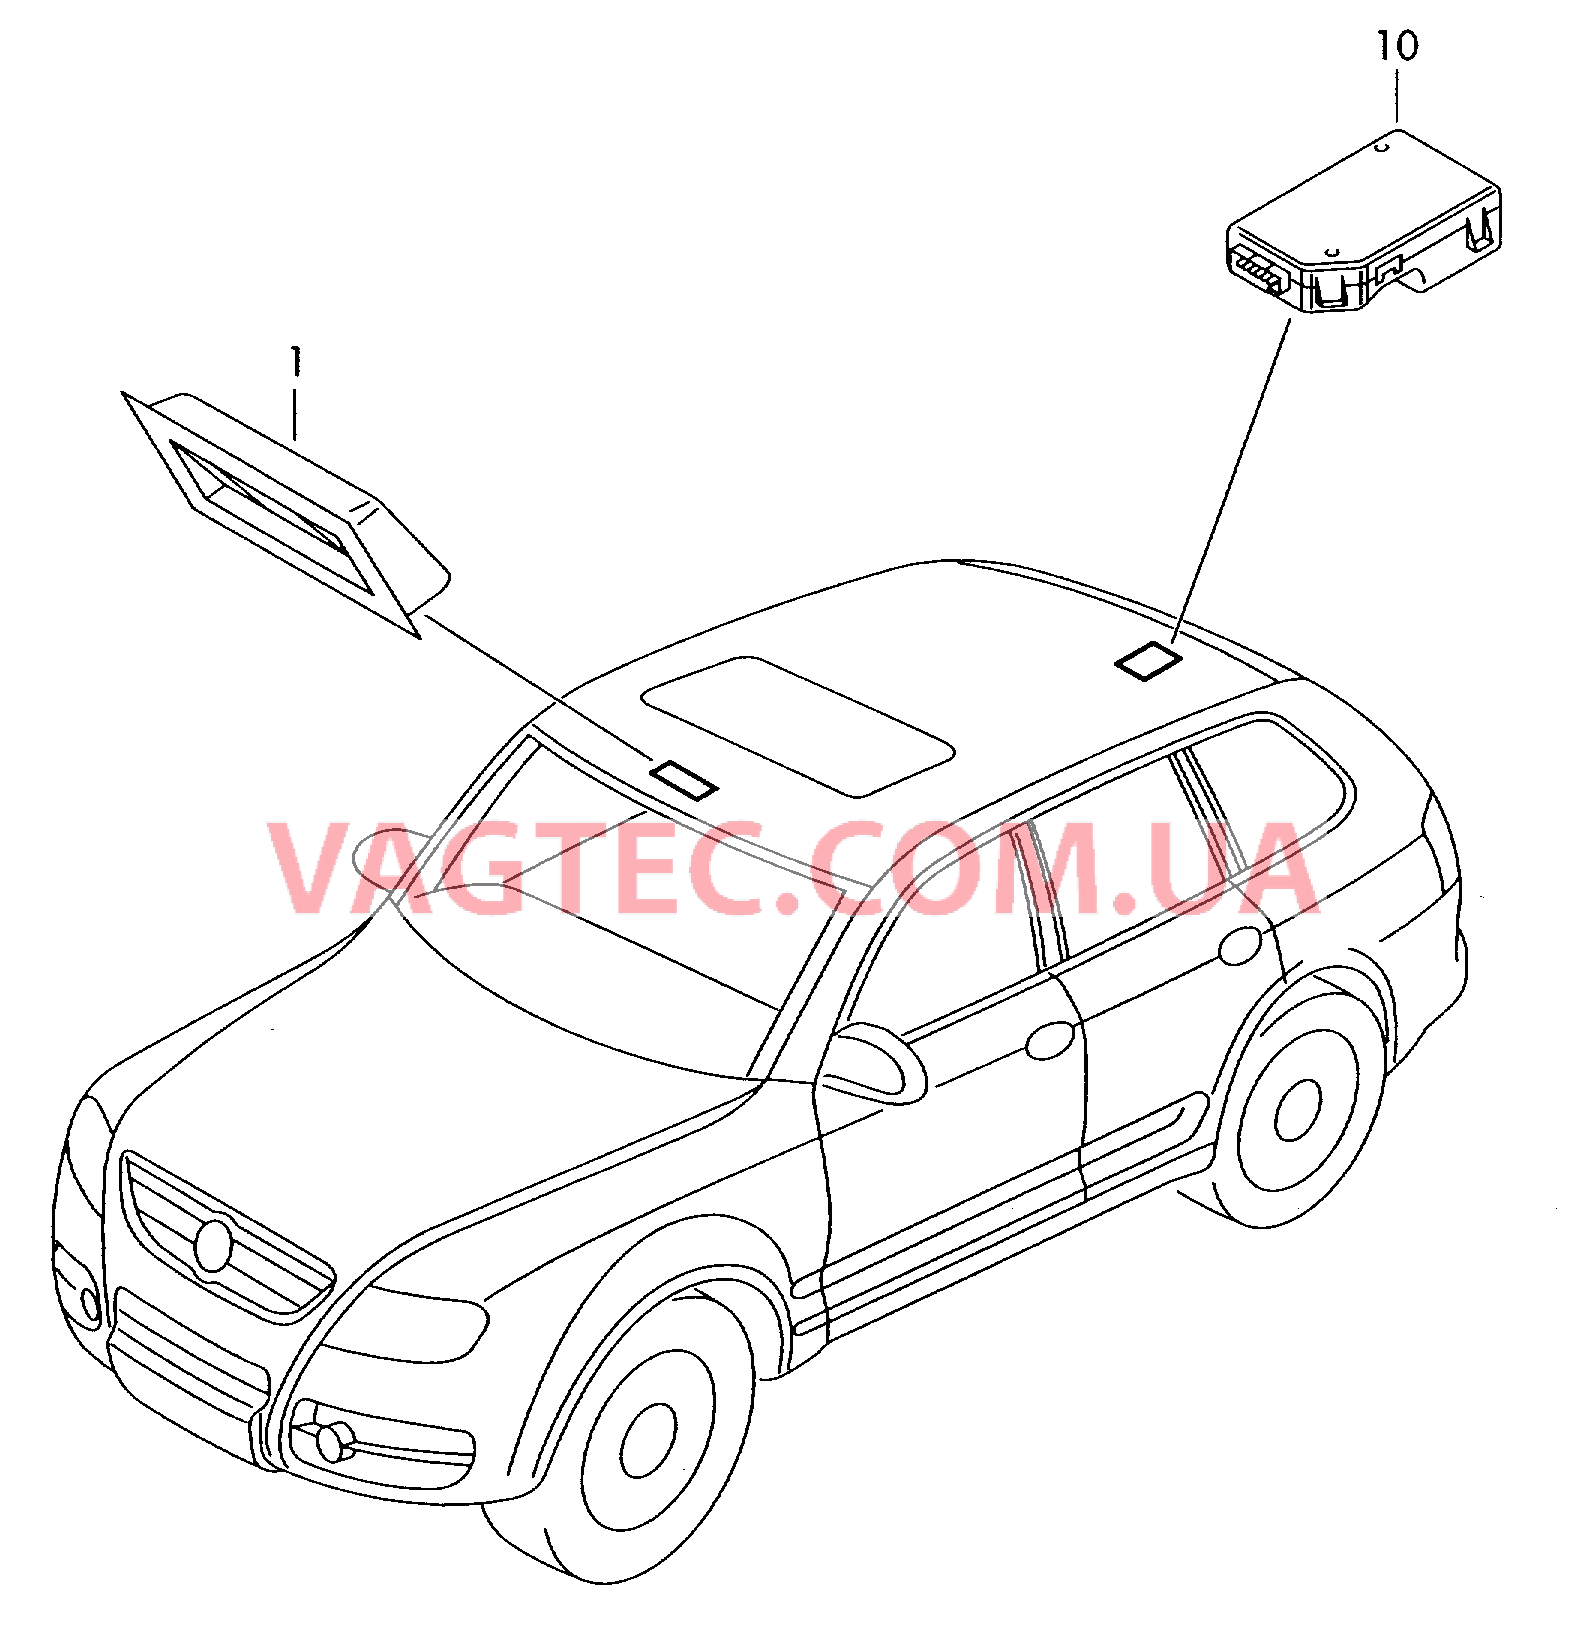 Панель управления и индикации Датчик магнитного поля для автомобилей с системой KOMPASS  для VOLKSWAGEN Touareg 2005